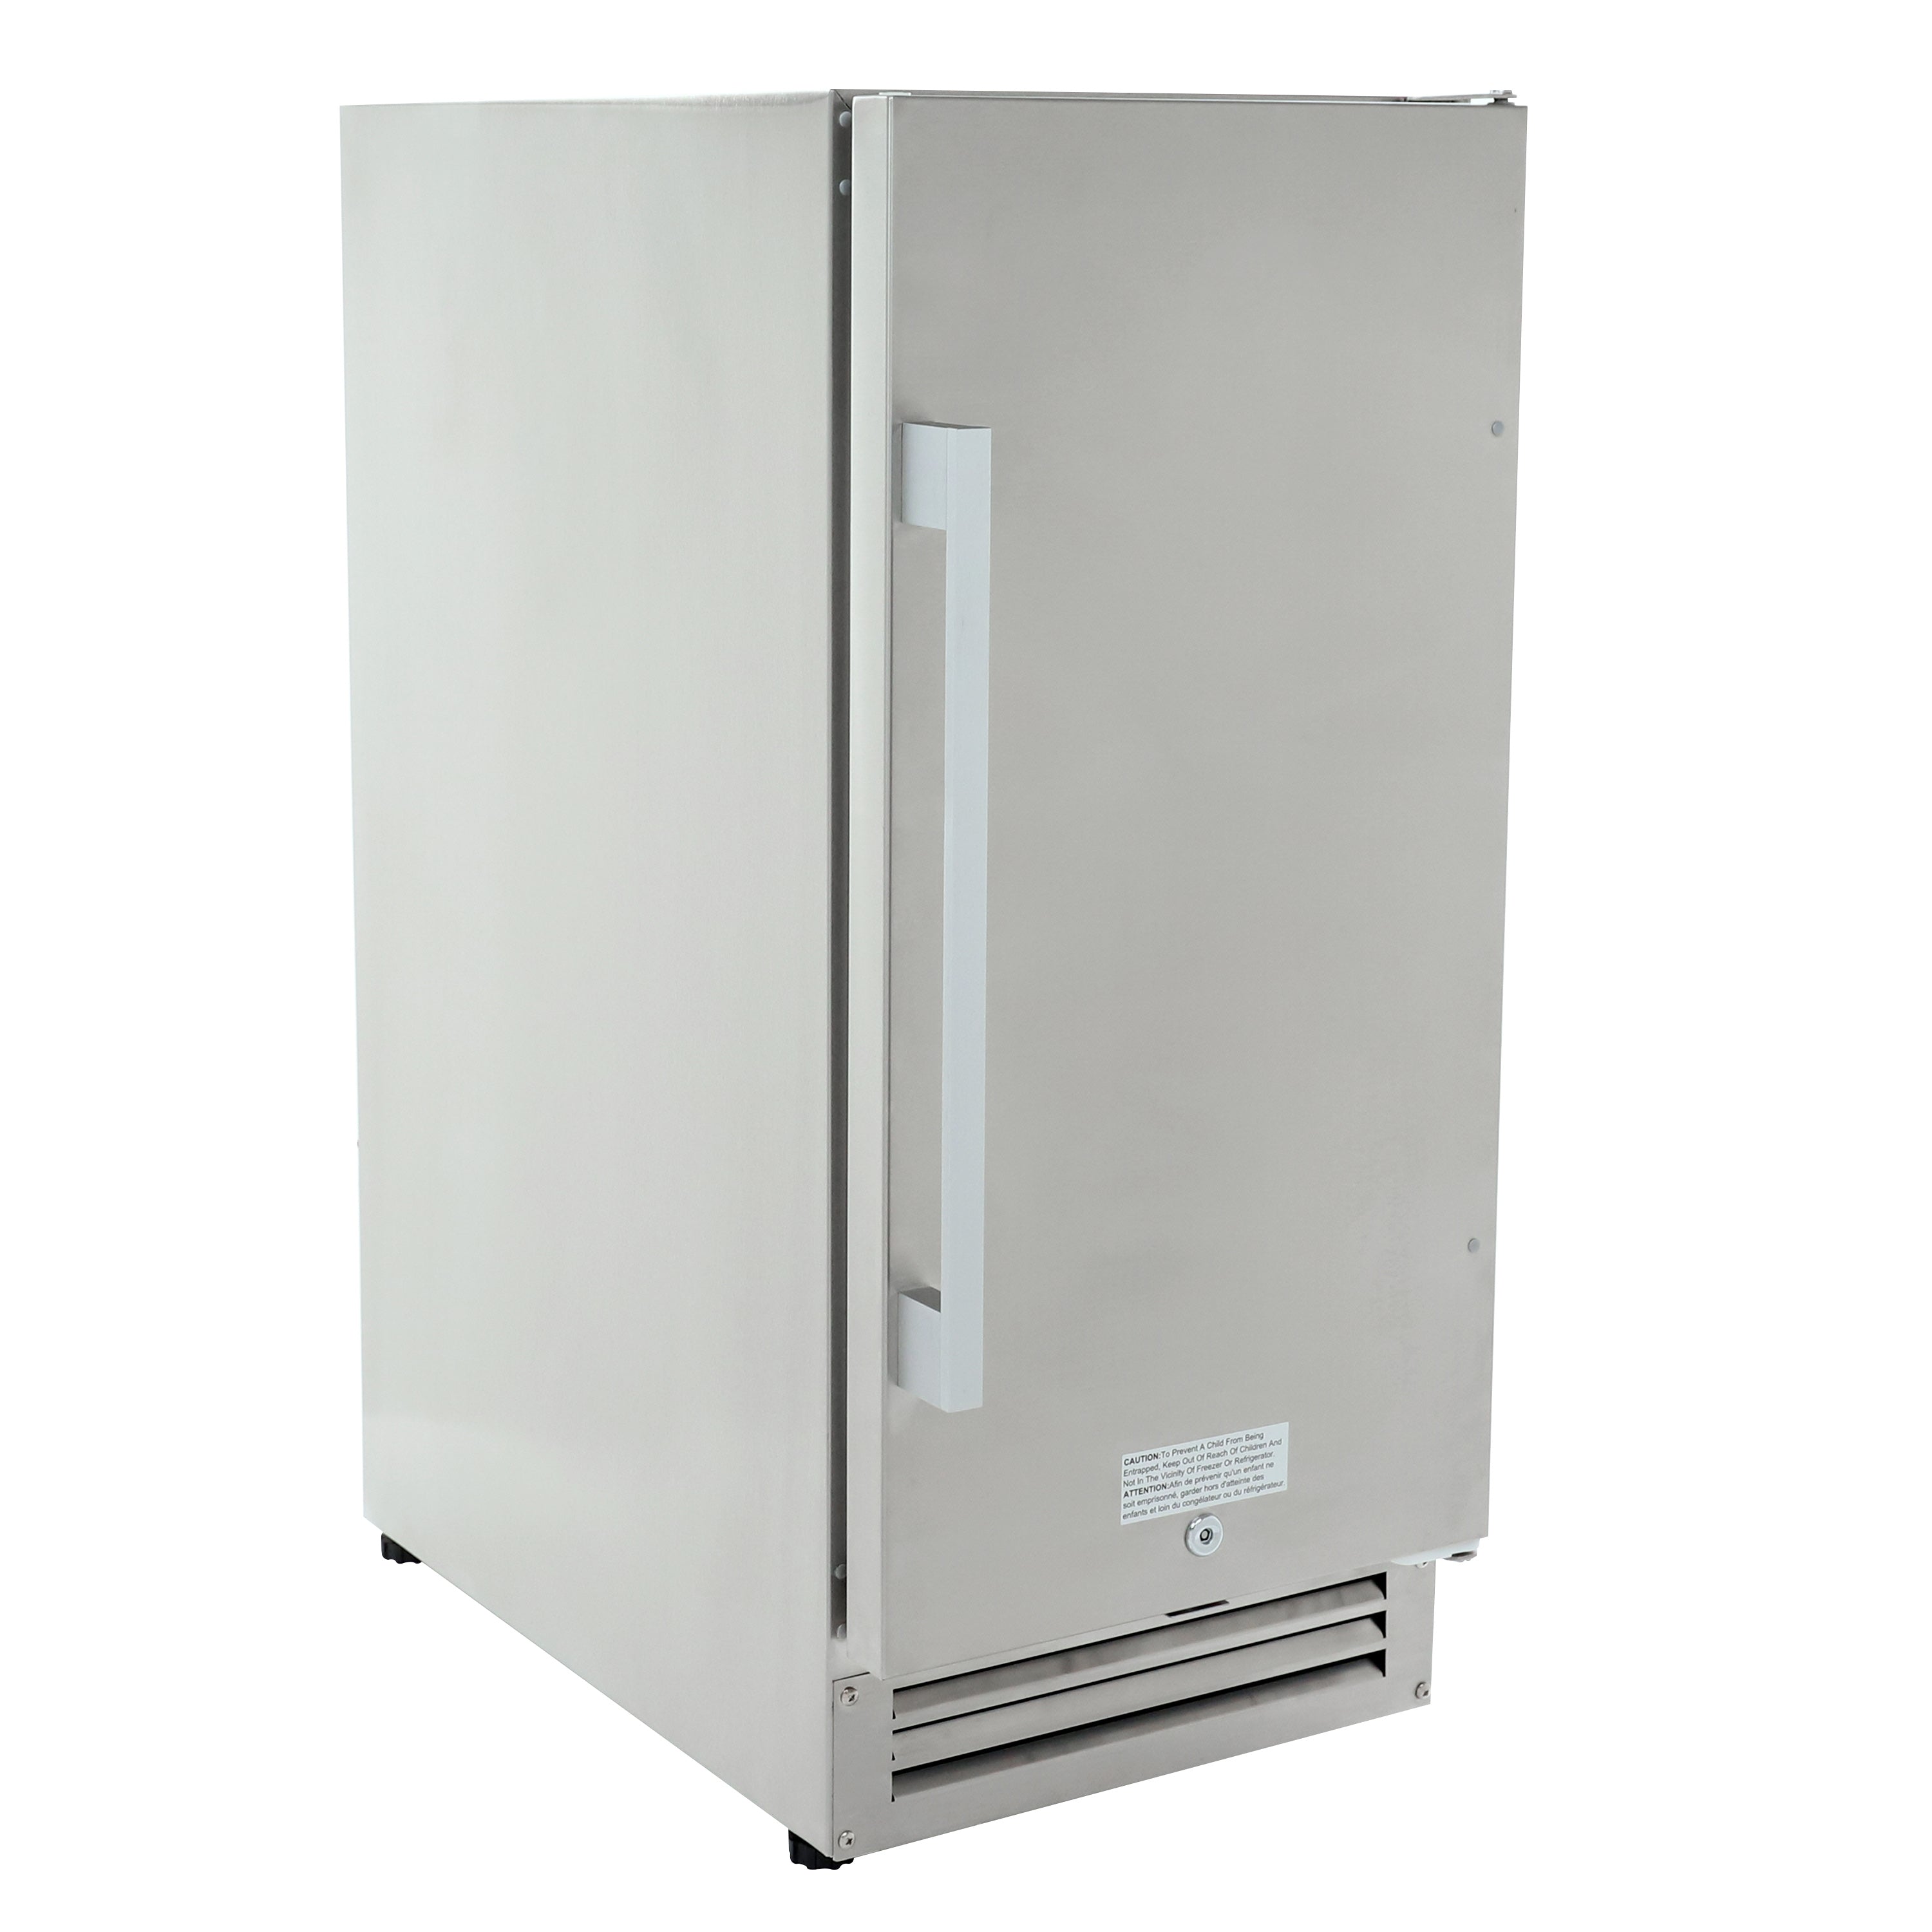 Avanti - OR1533U3S, Avanti ELITE Series Compact Outdoor Refrigerator, 2.9 cu. ft., in Stainless Steel